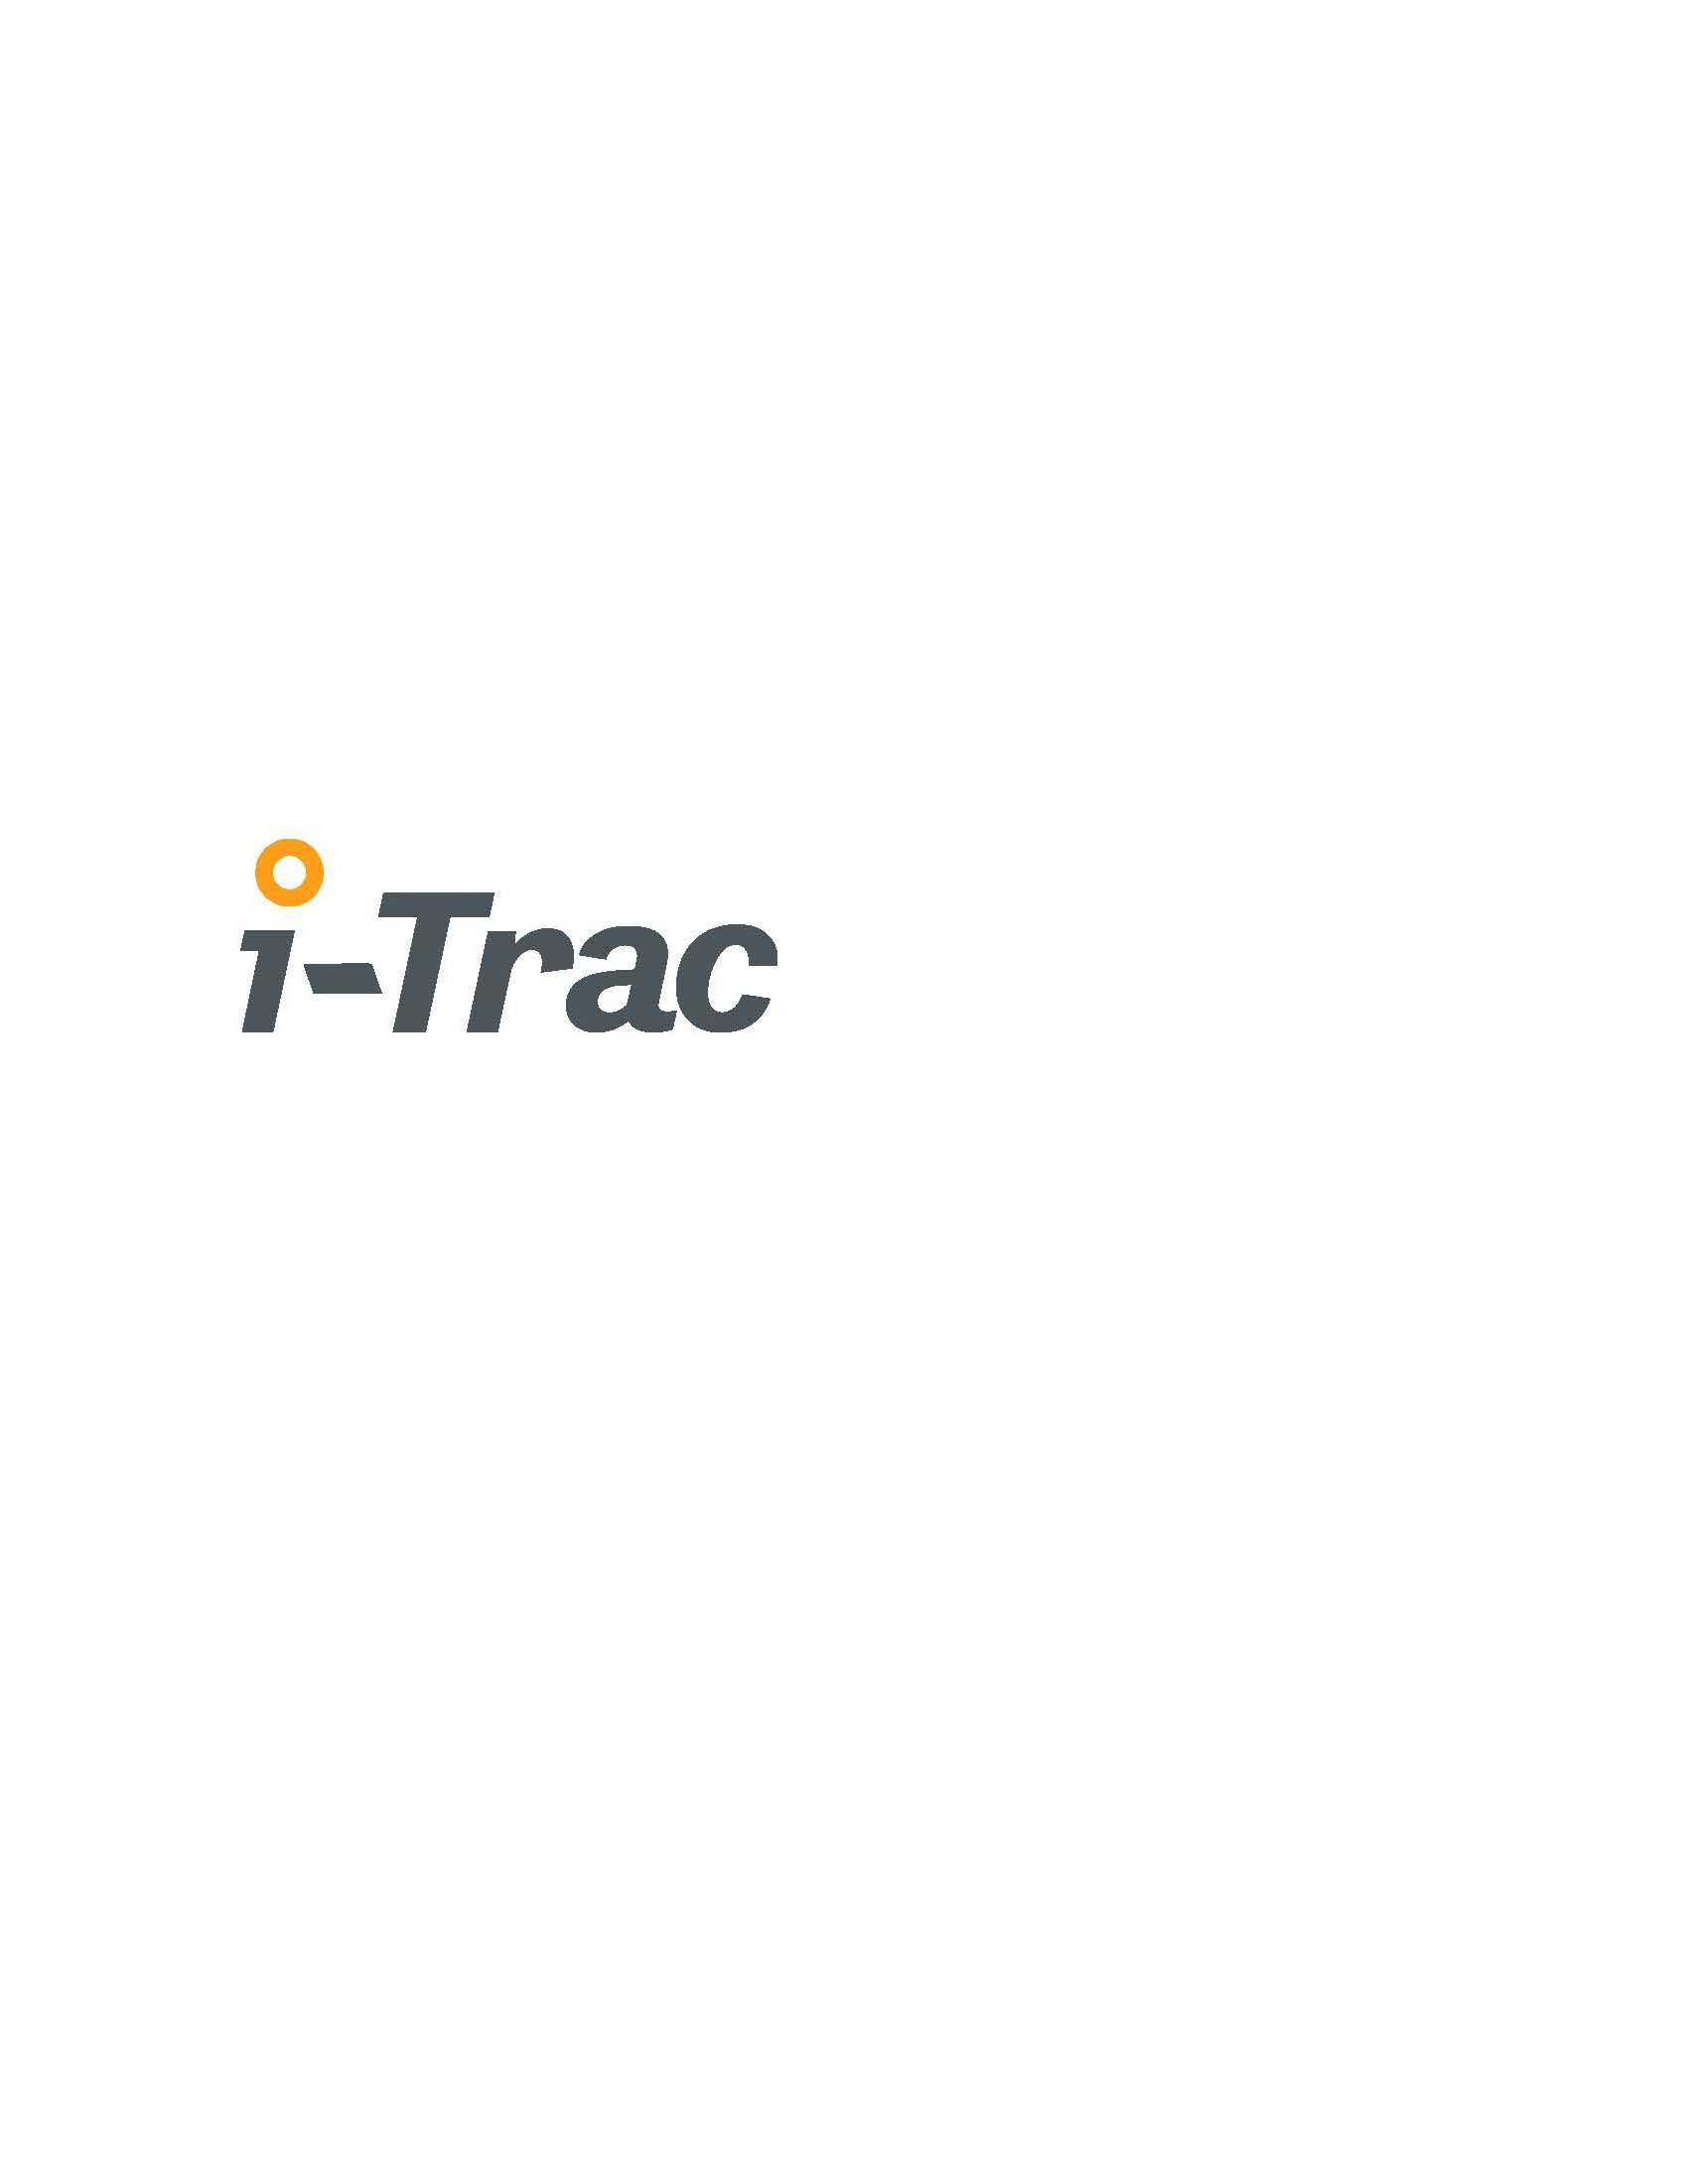 I-TRAC